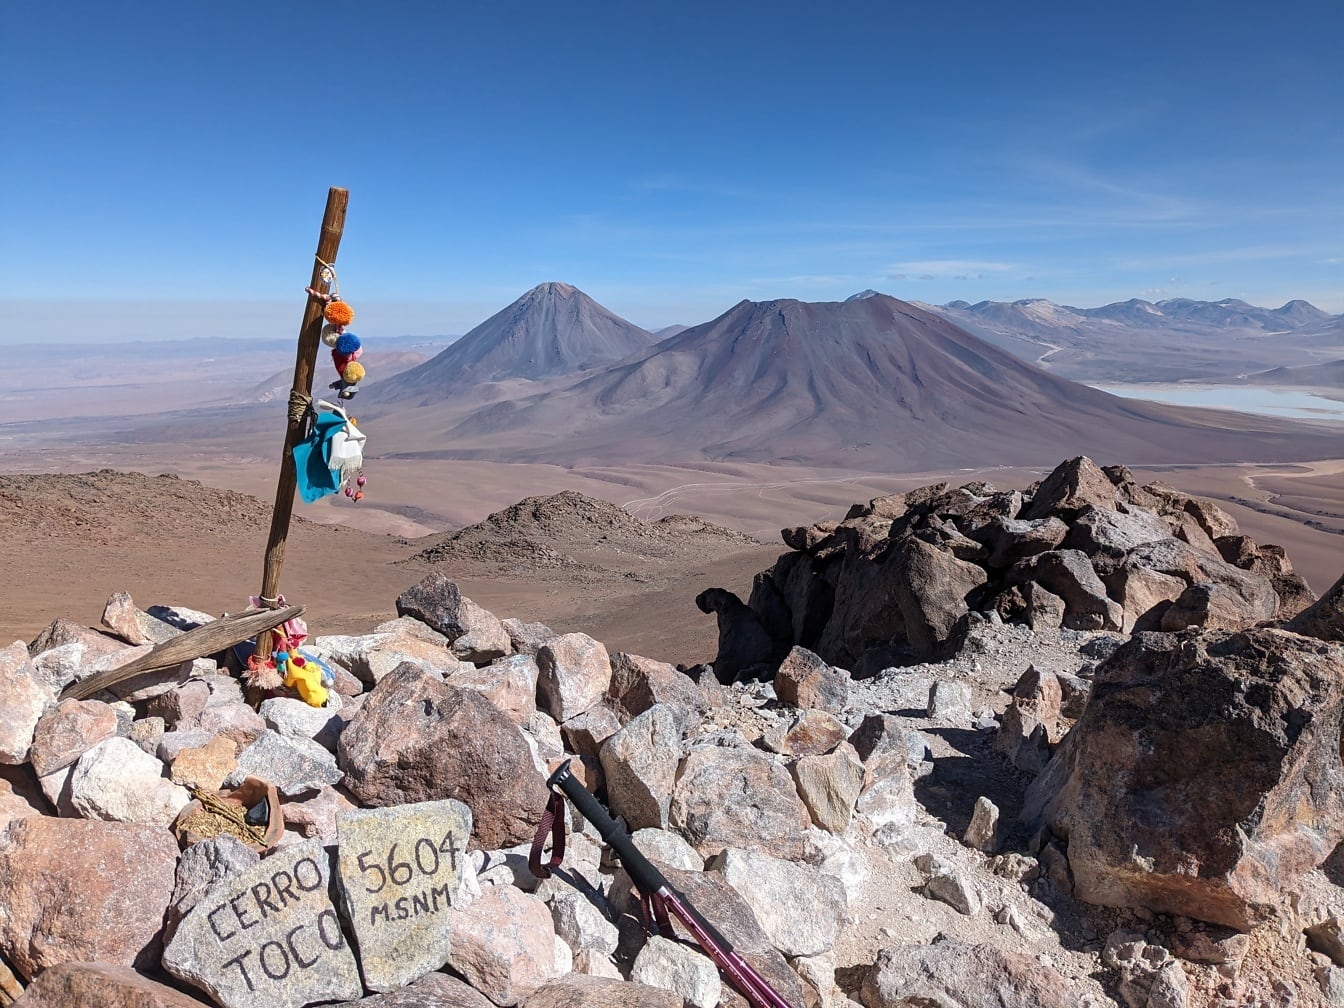 Đỉnh núi Cerro Toco ở Chile ở độ cao 5604 mét so với mực nước biển